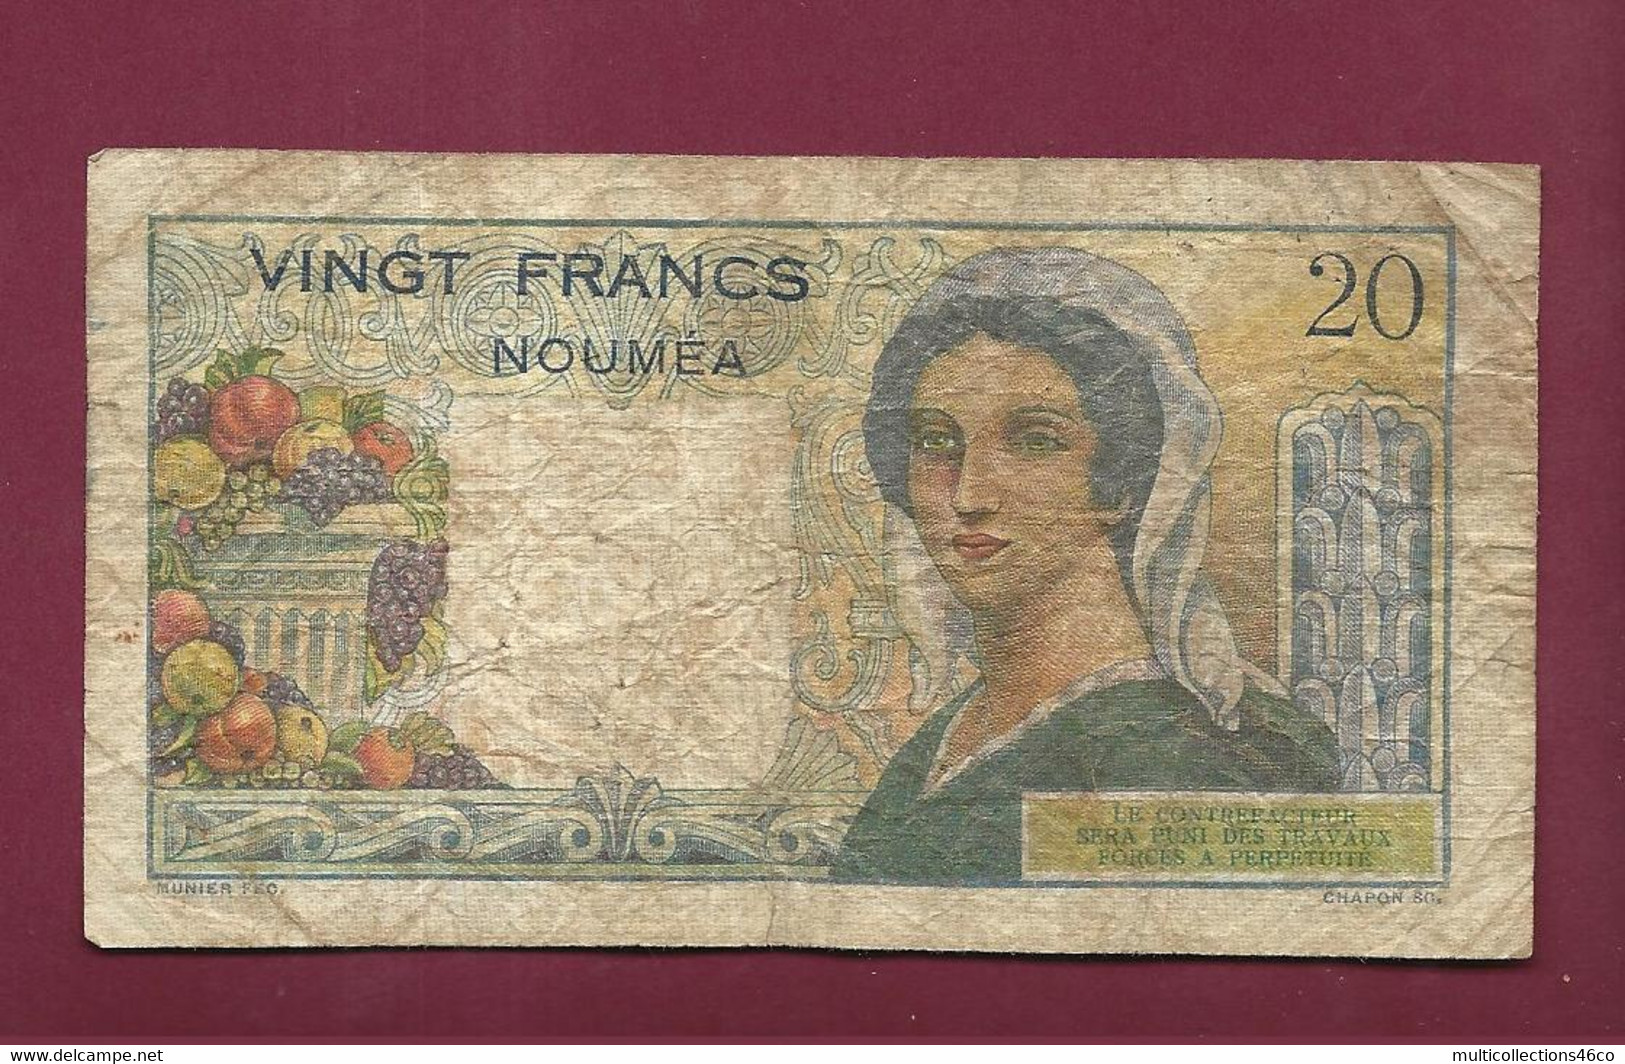 130222 - Billet BANQUE DE L'INDOCHINE NOUMEA Vingt 20 Francs - Plis Taches Petits Trous - Nouméa (New Caledonia 1873-1985)